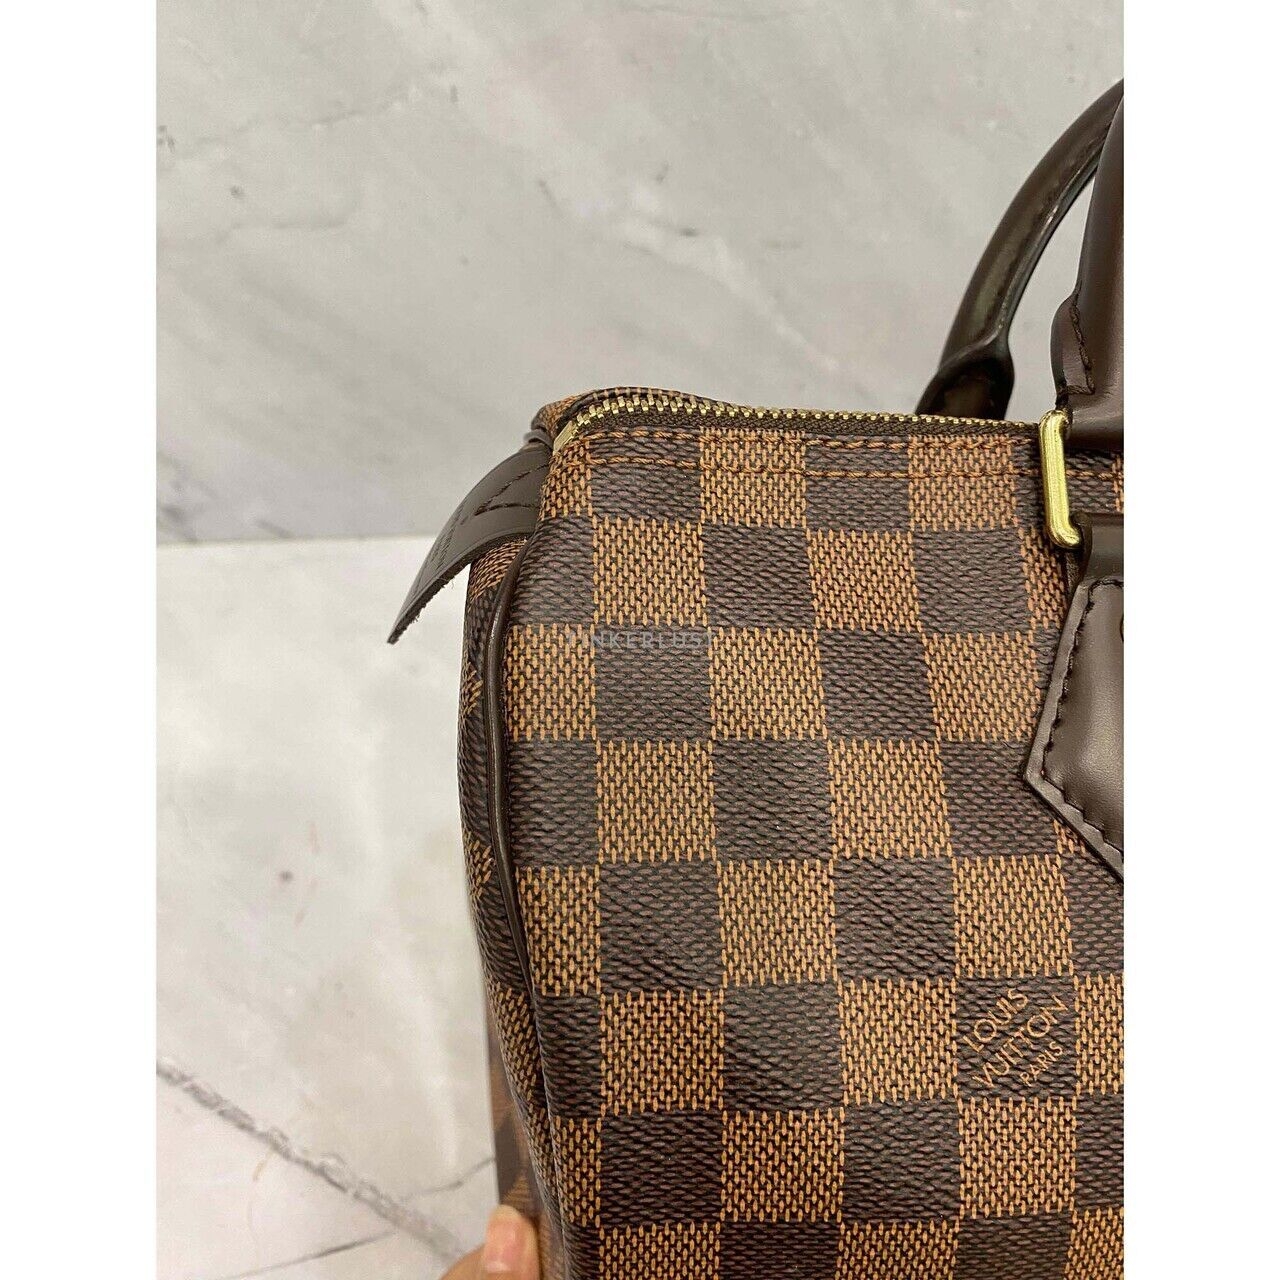 Louis Vuitton Speedy 30 Damier GHW 2018 Handbag